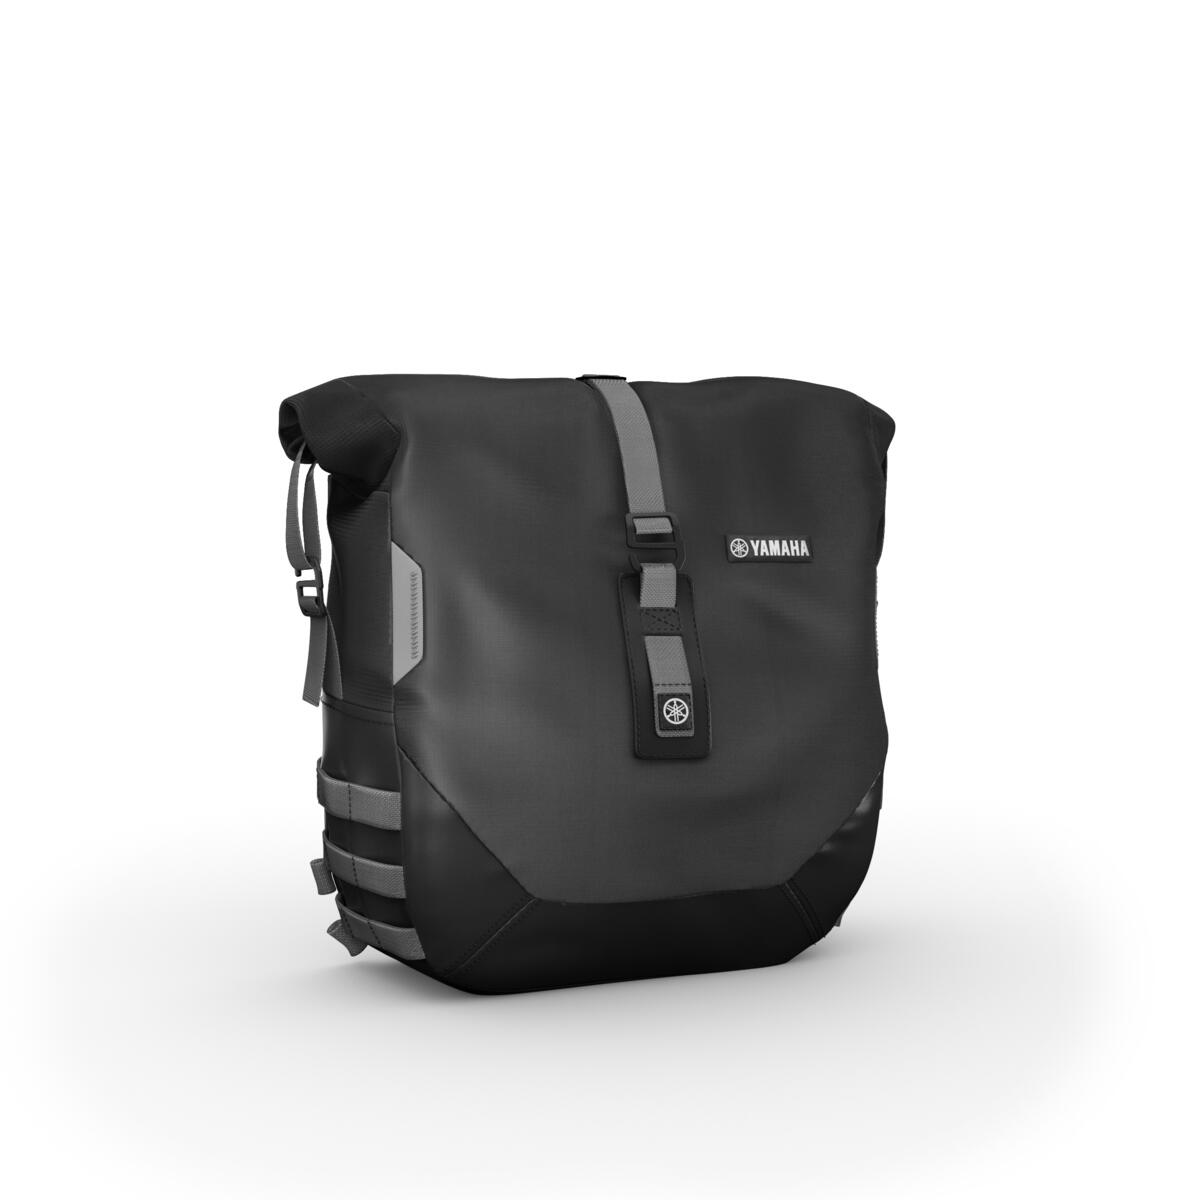 Bouw uw XSR900 om tot een ideale roadster voor lange tochten met het Weekend pack. Monteer twee zachte tassen van 13,5 l met elk maximaal 5 kg op uw motorfiets om uw reisbenodigdheden in te pakken voor extra lange tochten. U kunt deze tassen gemakkelijk voorzien van waterdichte voeringen die uw bagage zullen beschermen tegen ongunstige weersomstandigheden. Het pack wordt geleverd met een USB-oplader om uw navigatiesysteem of smartphone onderweg op te laden.